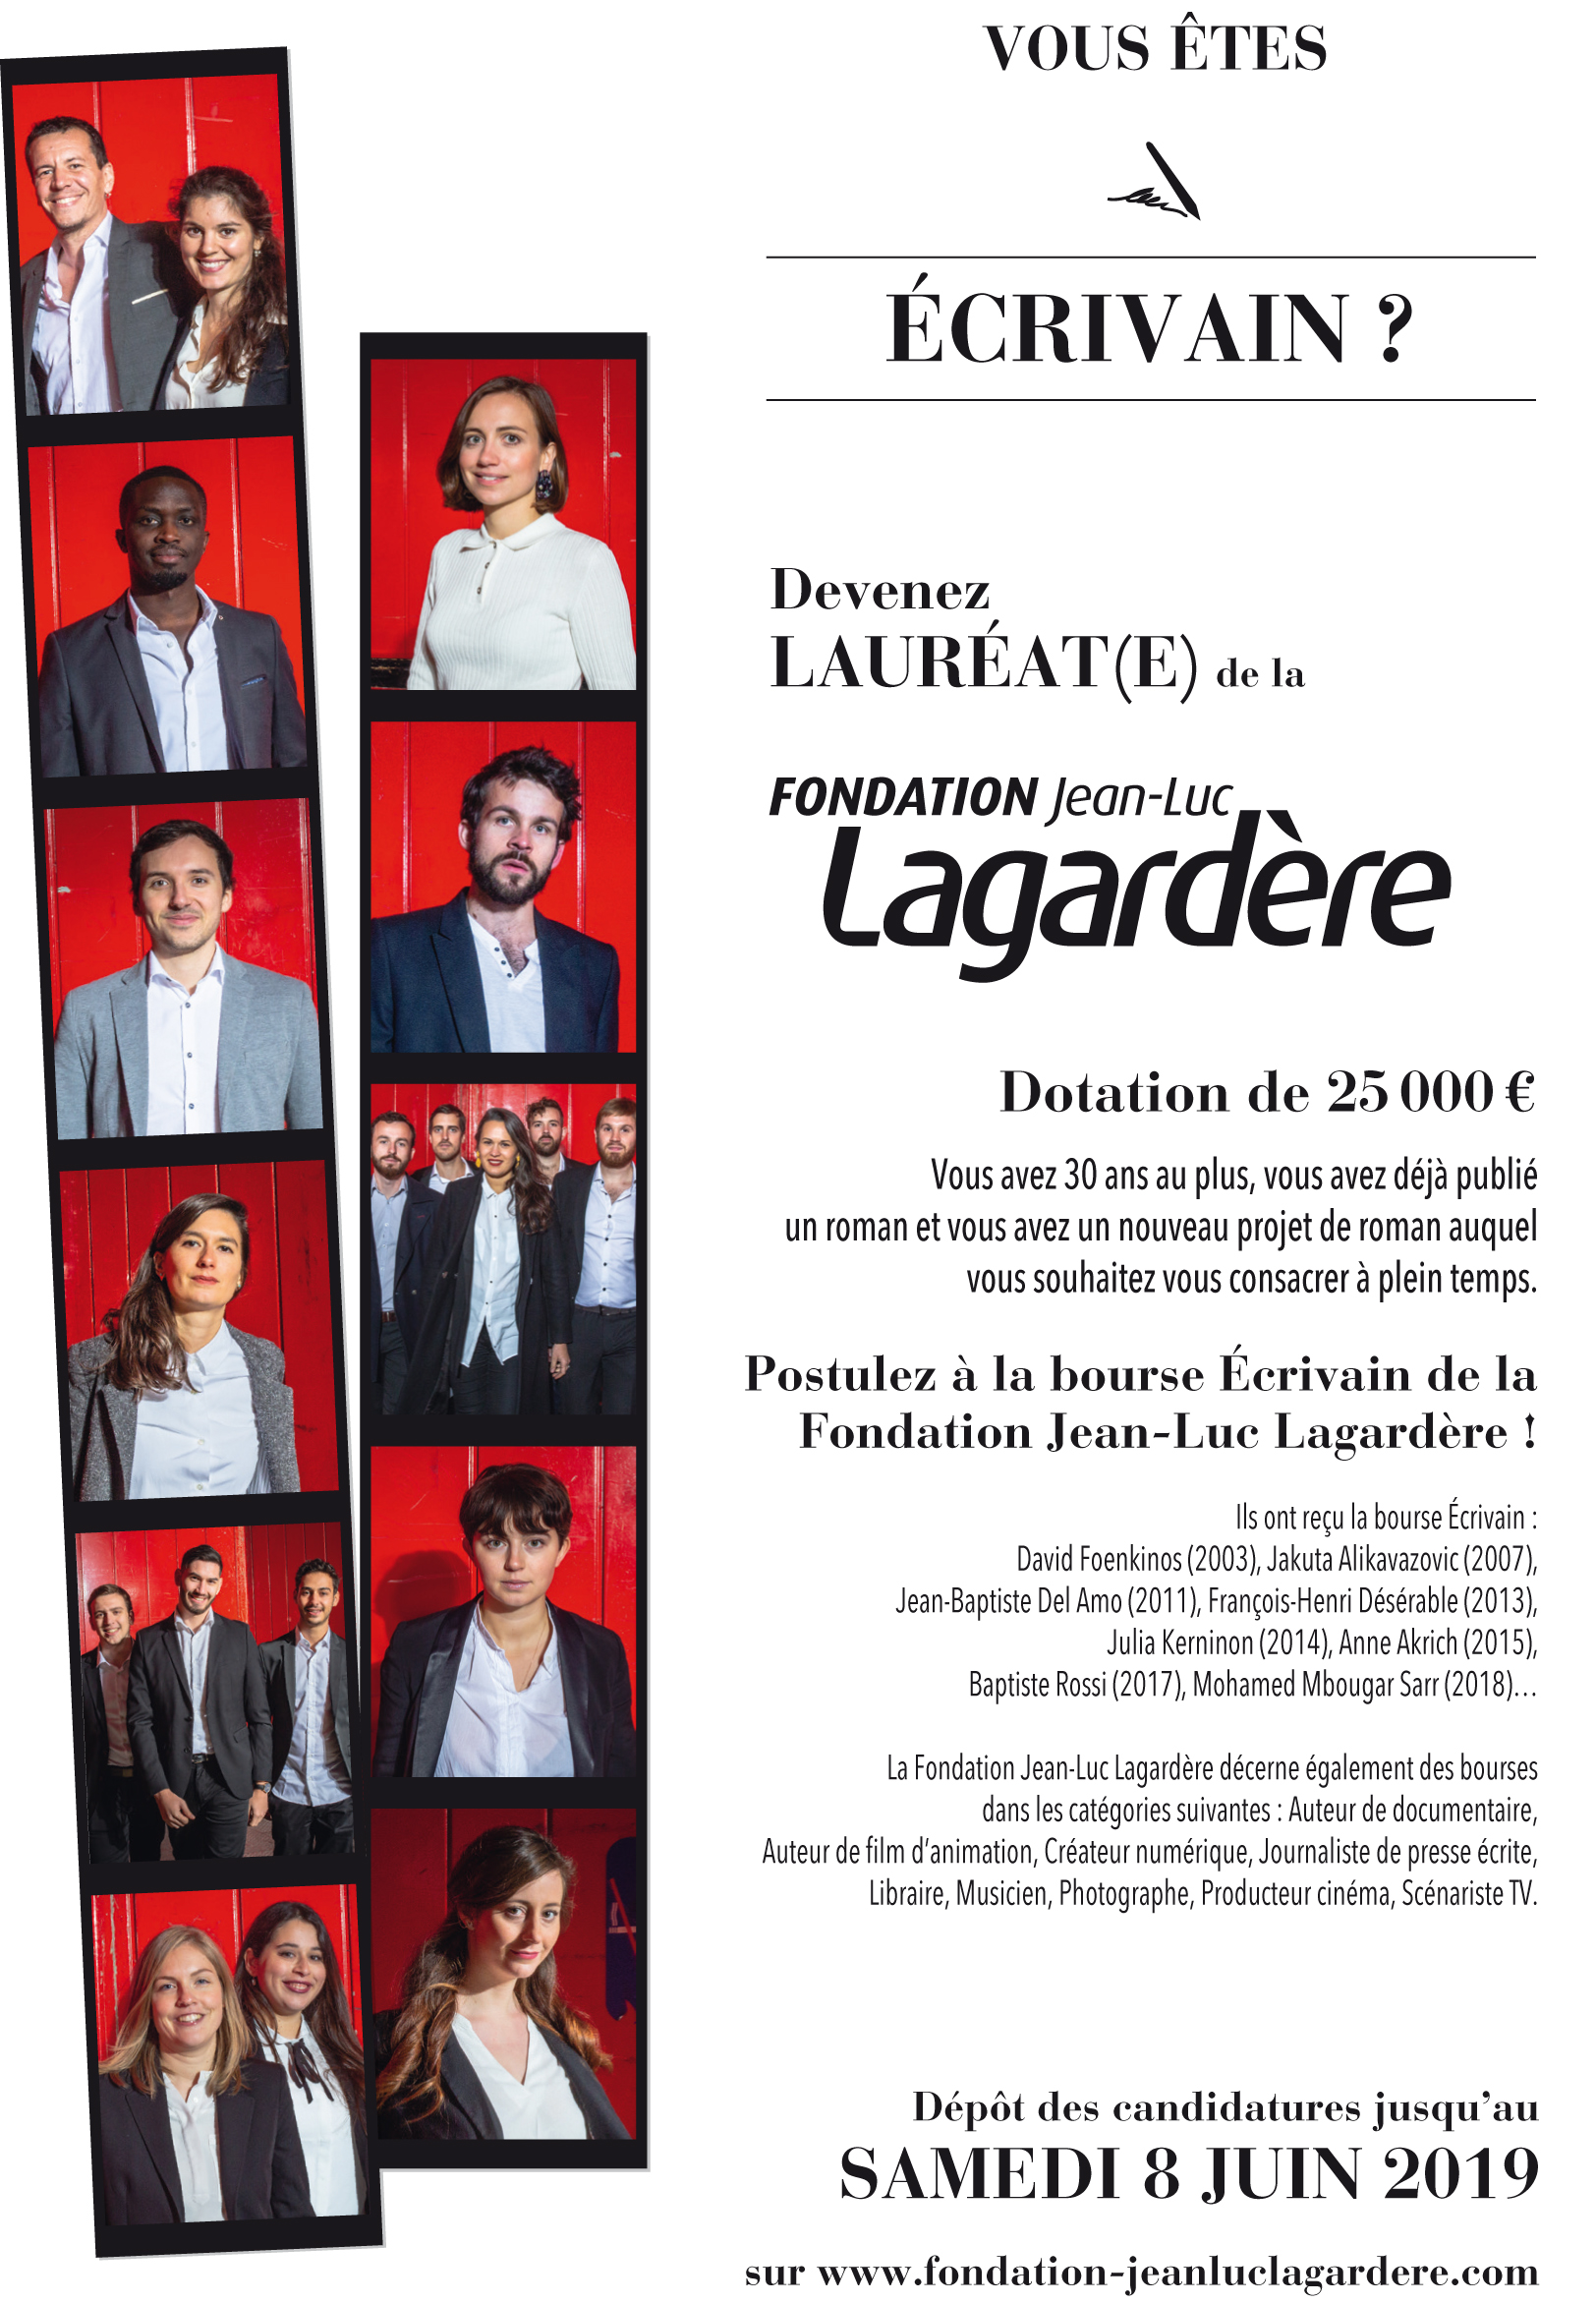 Devenez lauréat de la fondation Jean-Luc LAGARDÈRE !